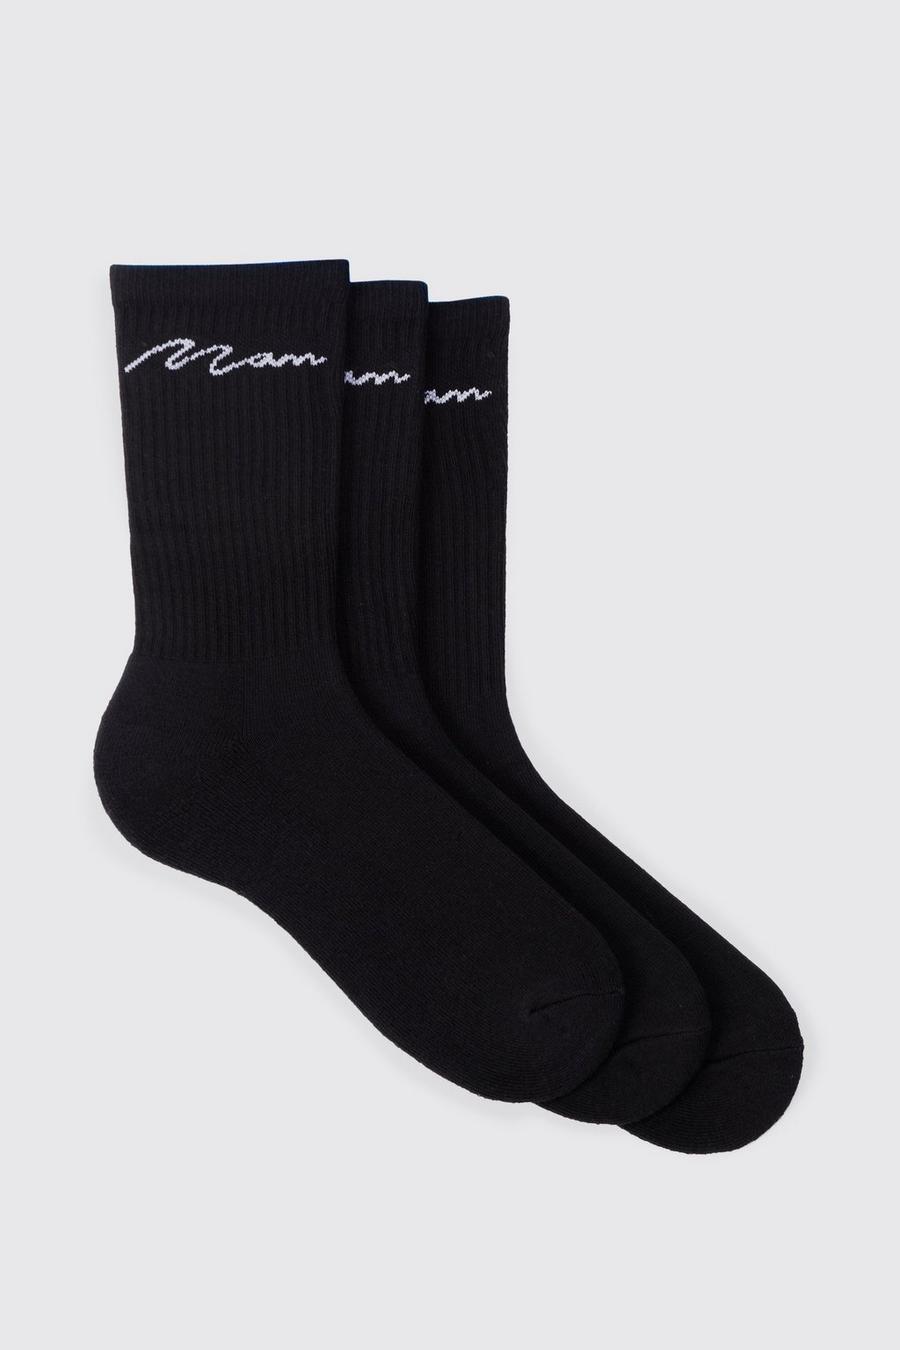 Pack de 3 pares de calcetines deportivos con firma MAN, Black